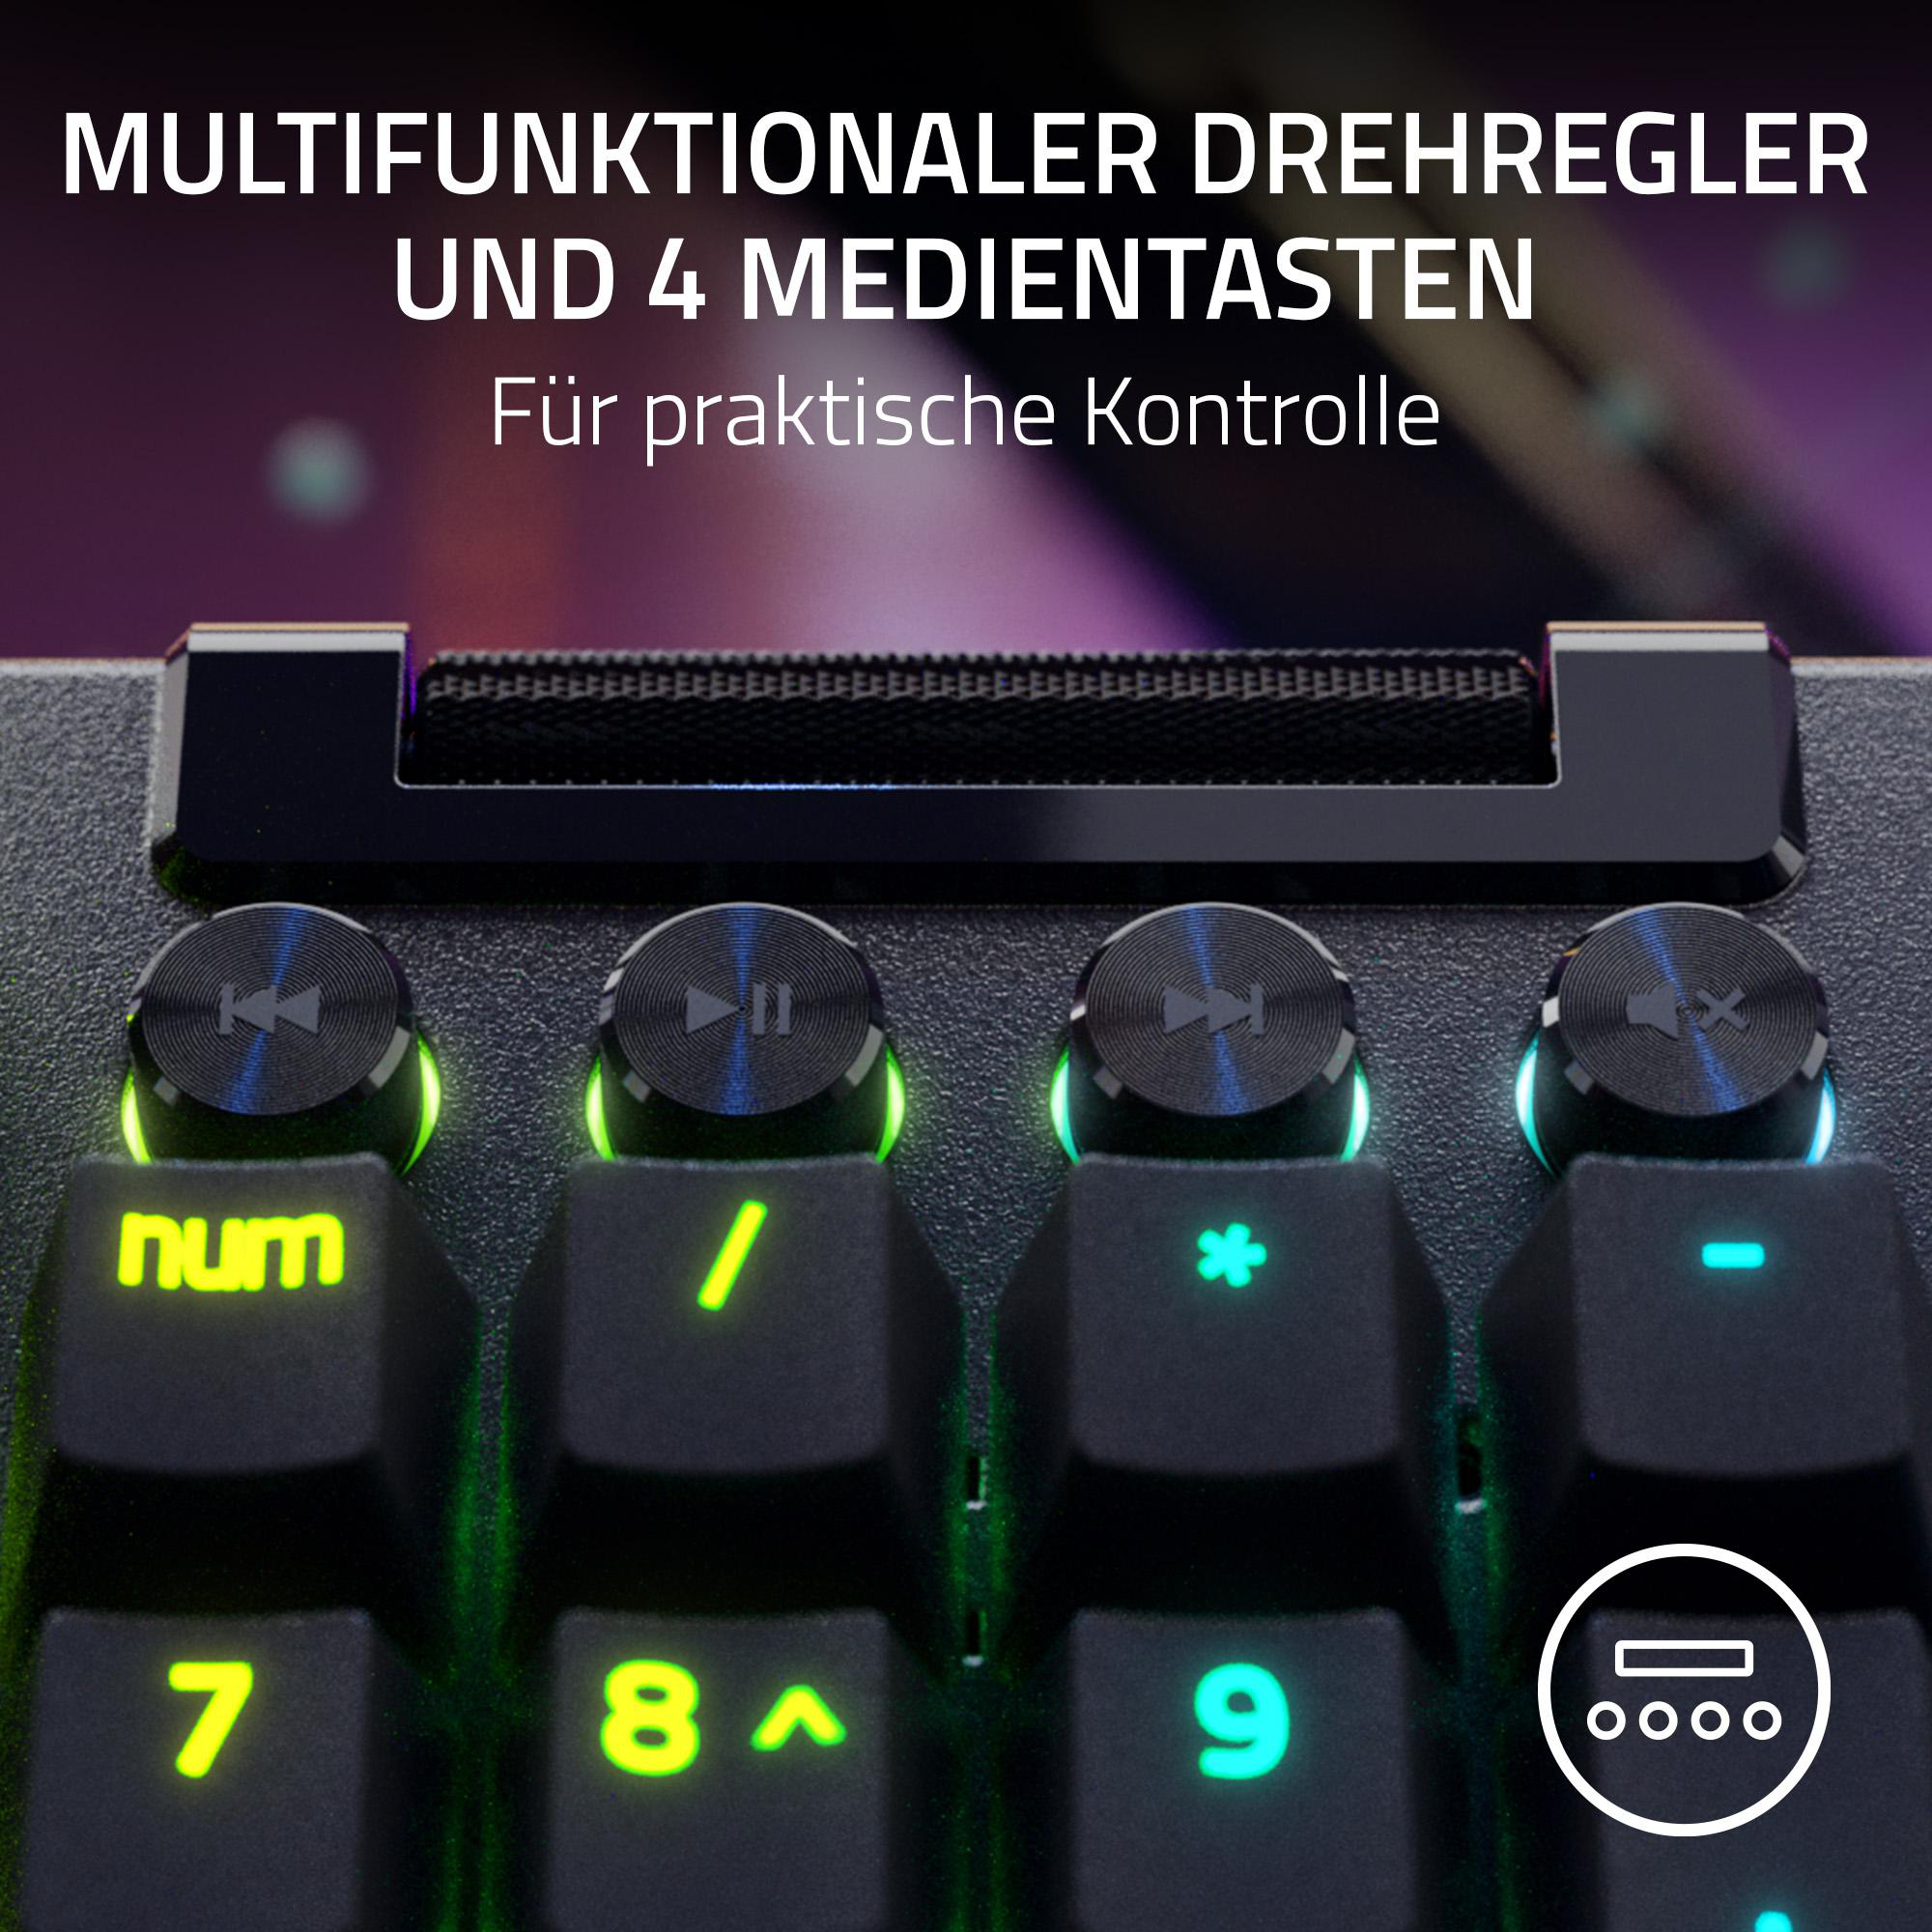 Mechanisch, RAZER V4 Tastatur, Green, Gaming Razer Pro, Schwarz BlackWidow Kabelgebunden,